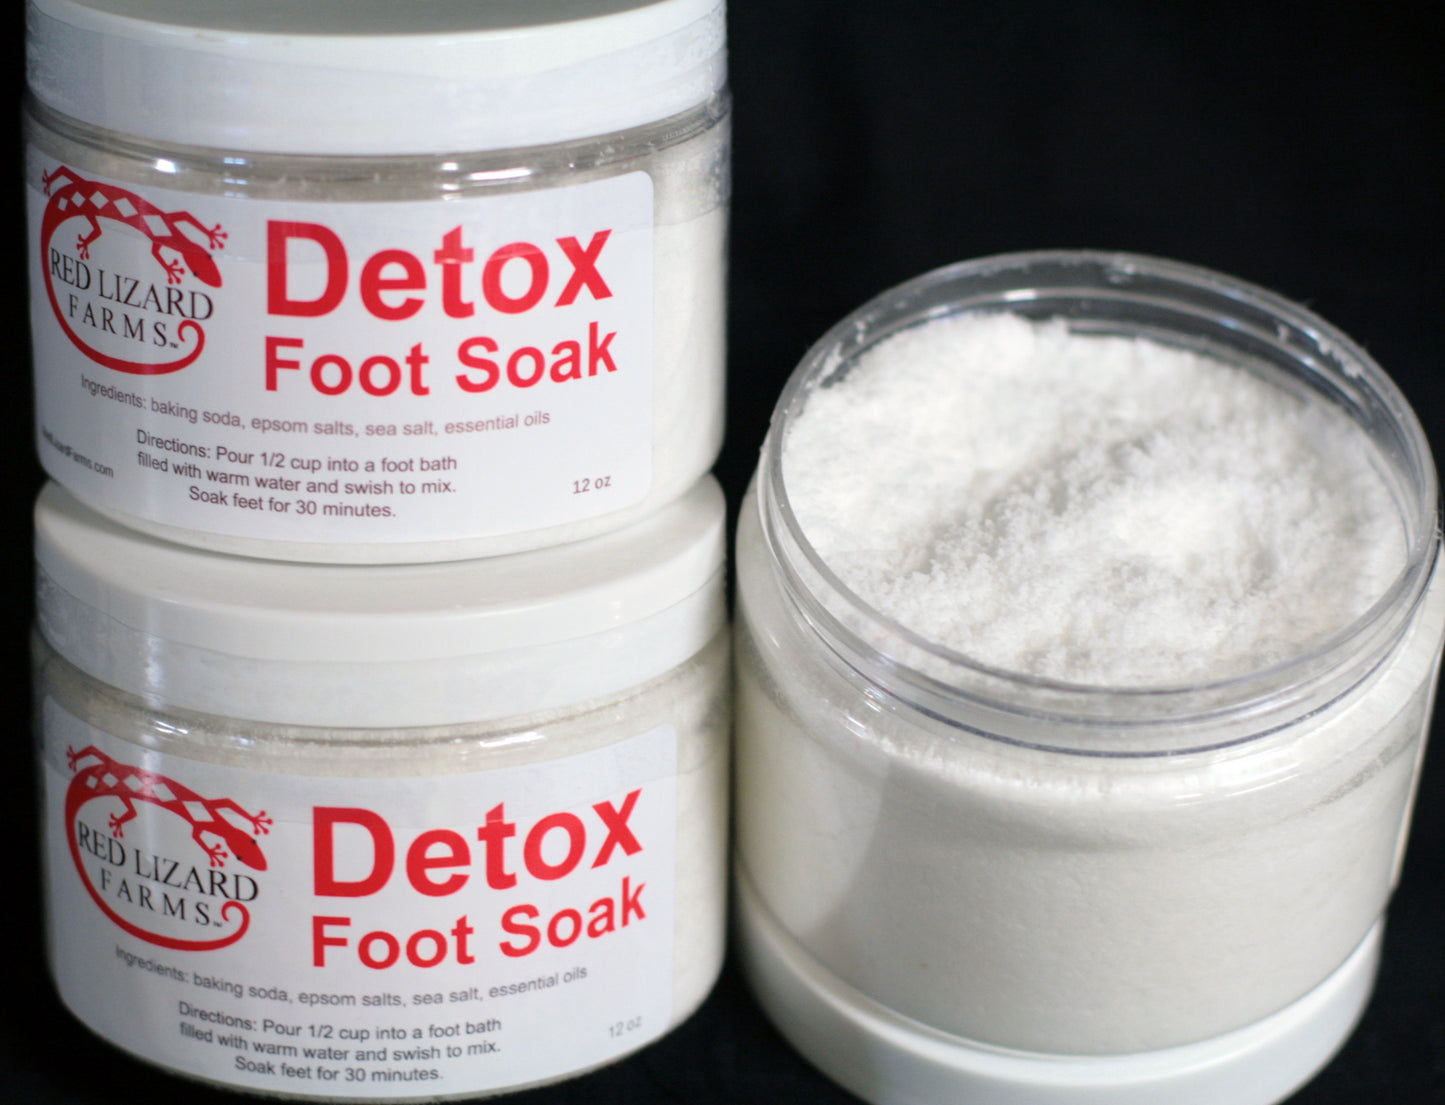 Detox Foot Soak